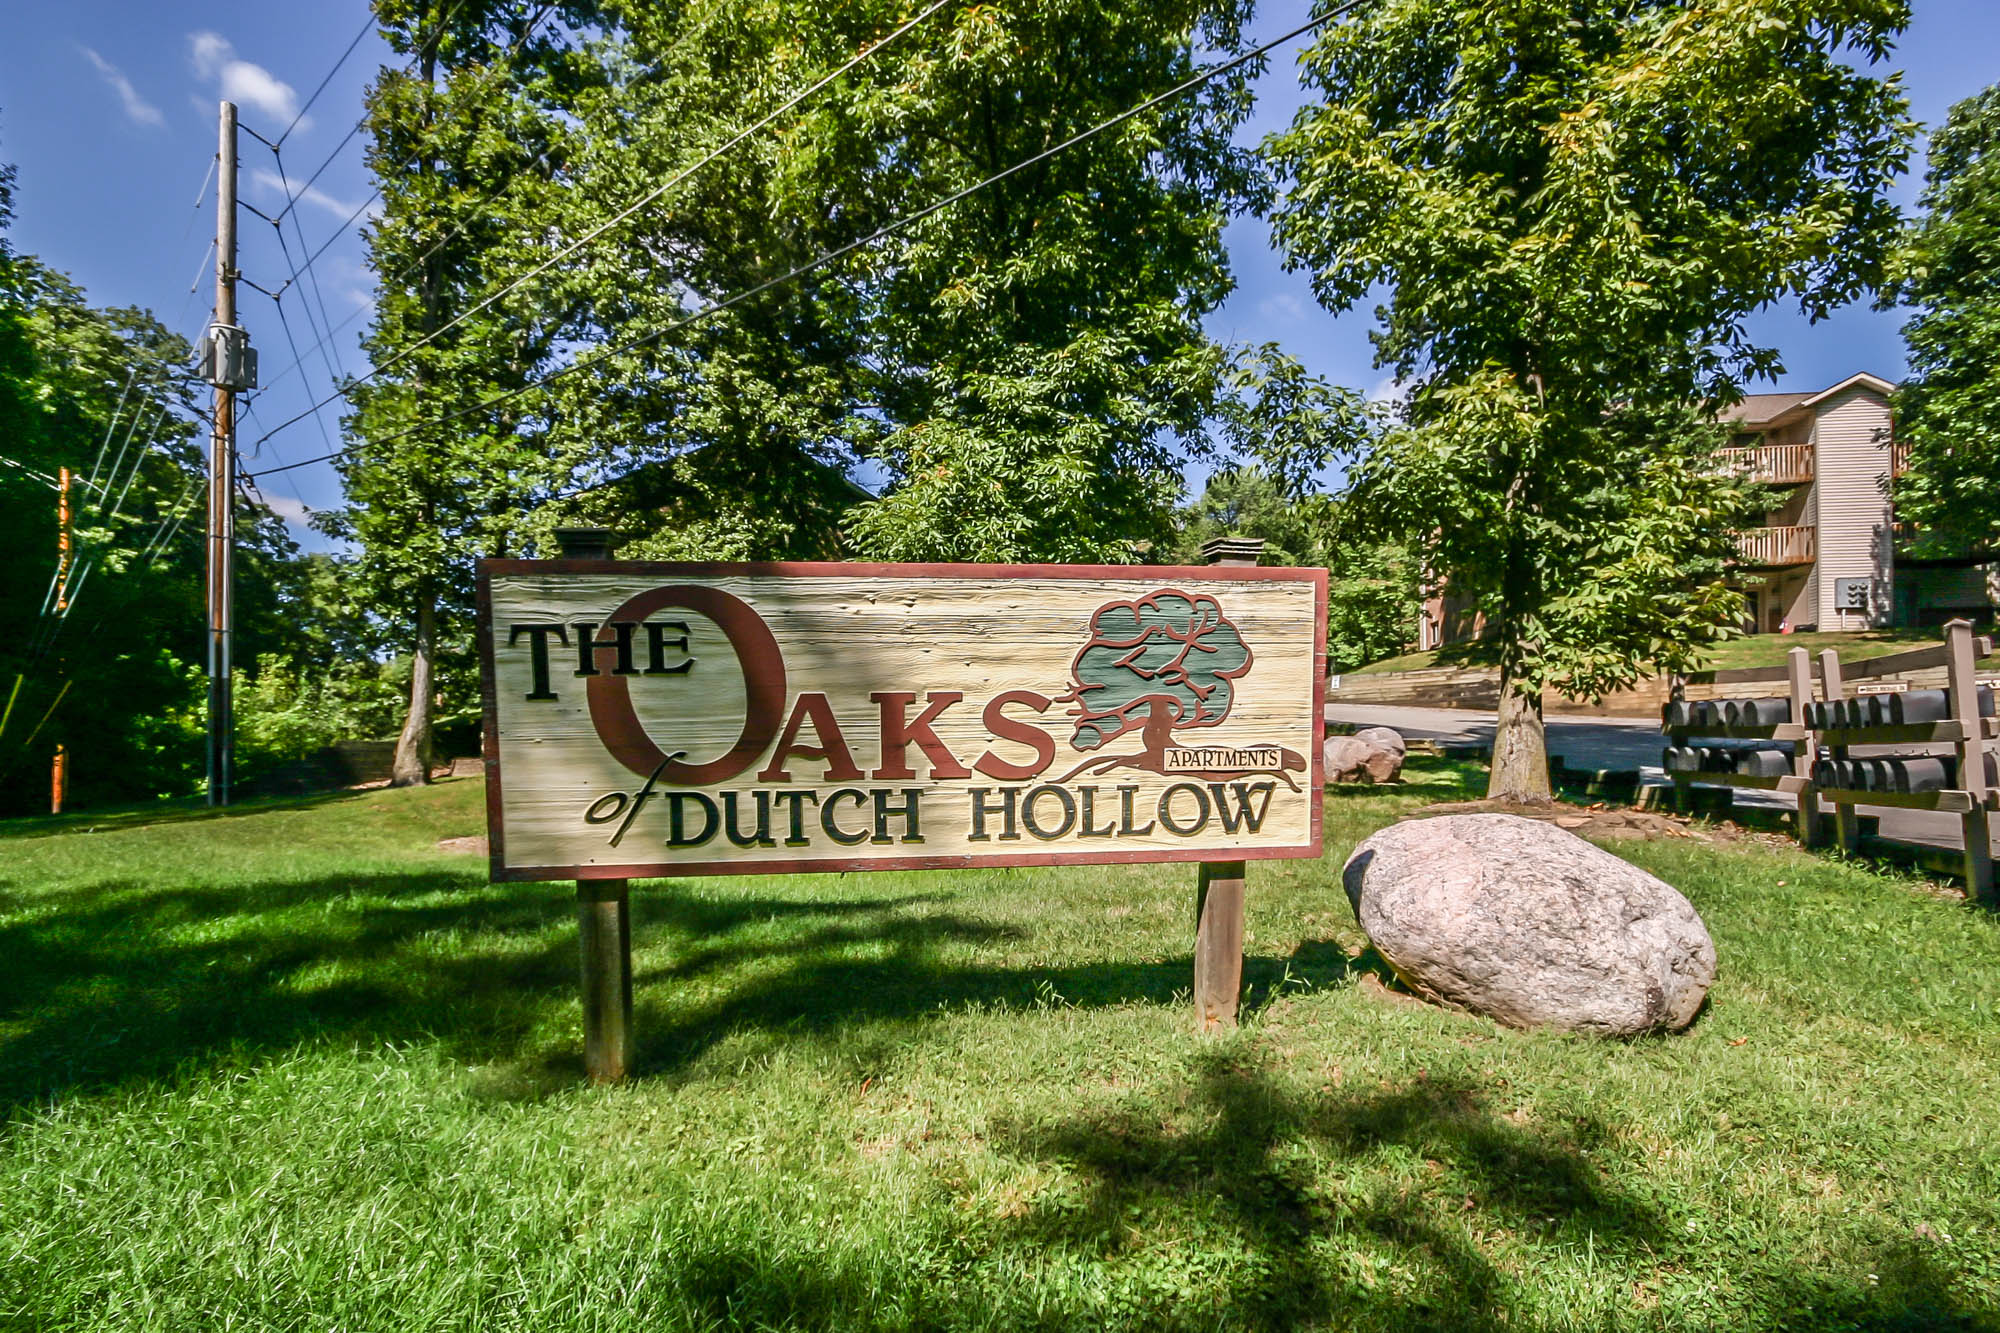 Oaks of Dutch Hollow 1.jpg